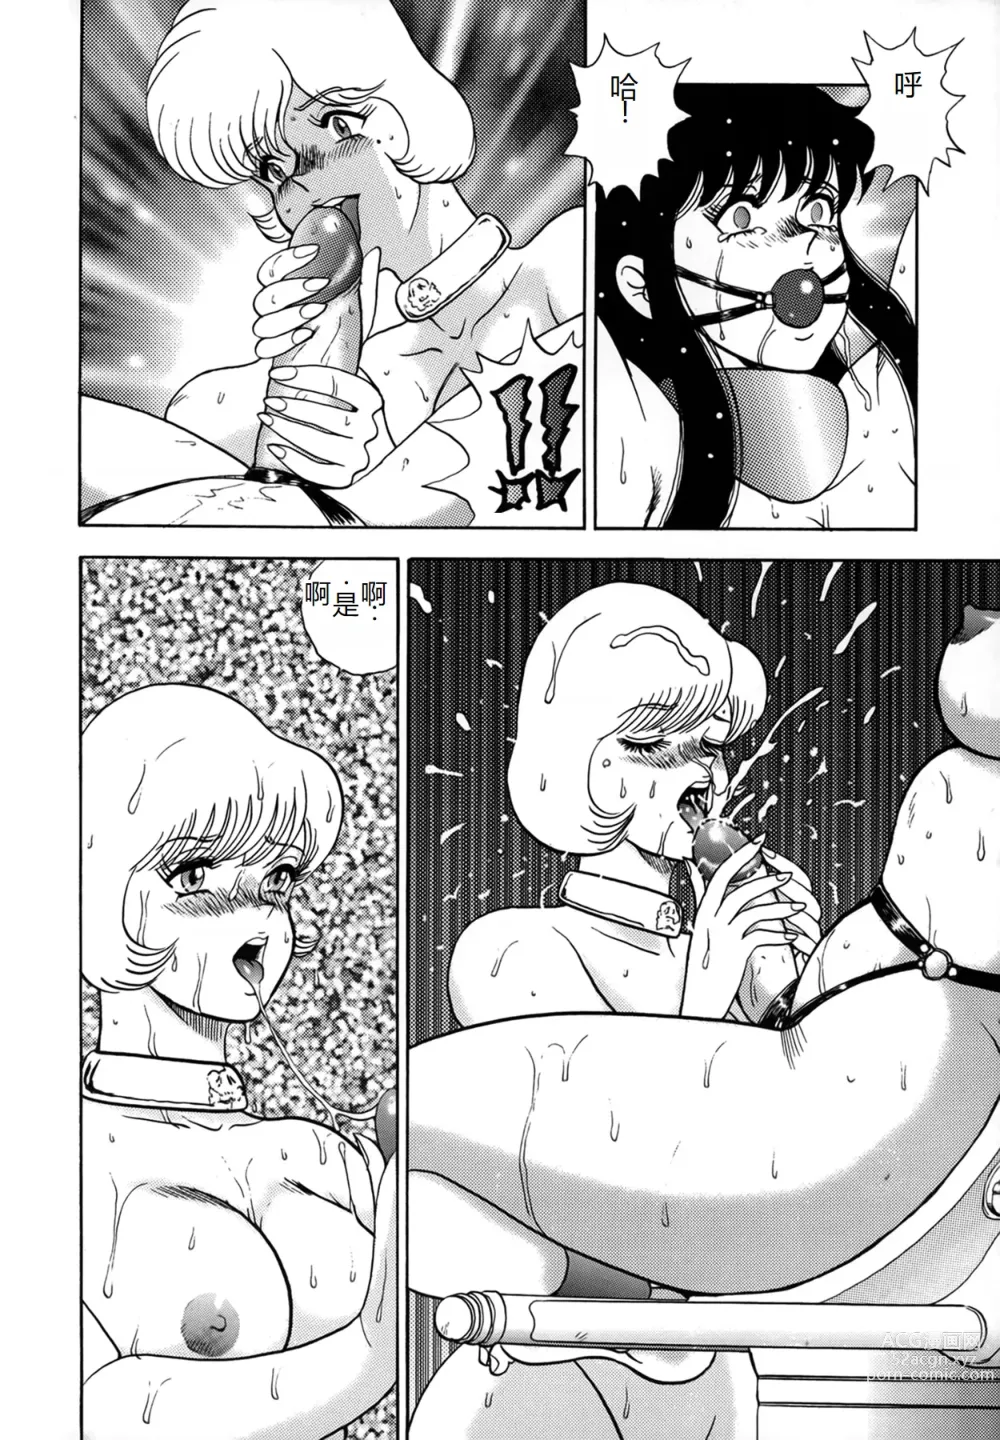 Page 154 of manga Inbi Teikoku